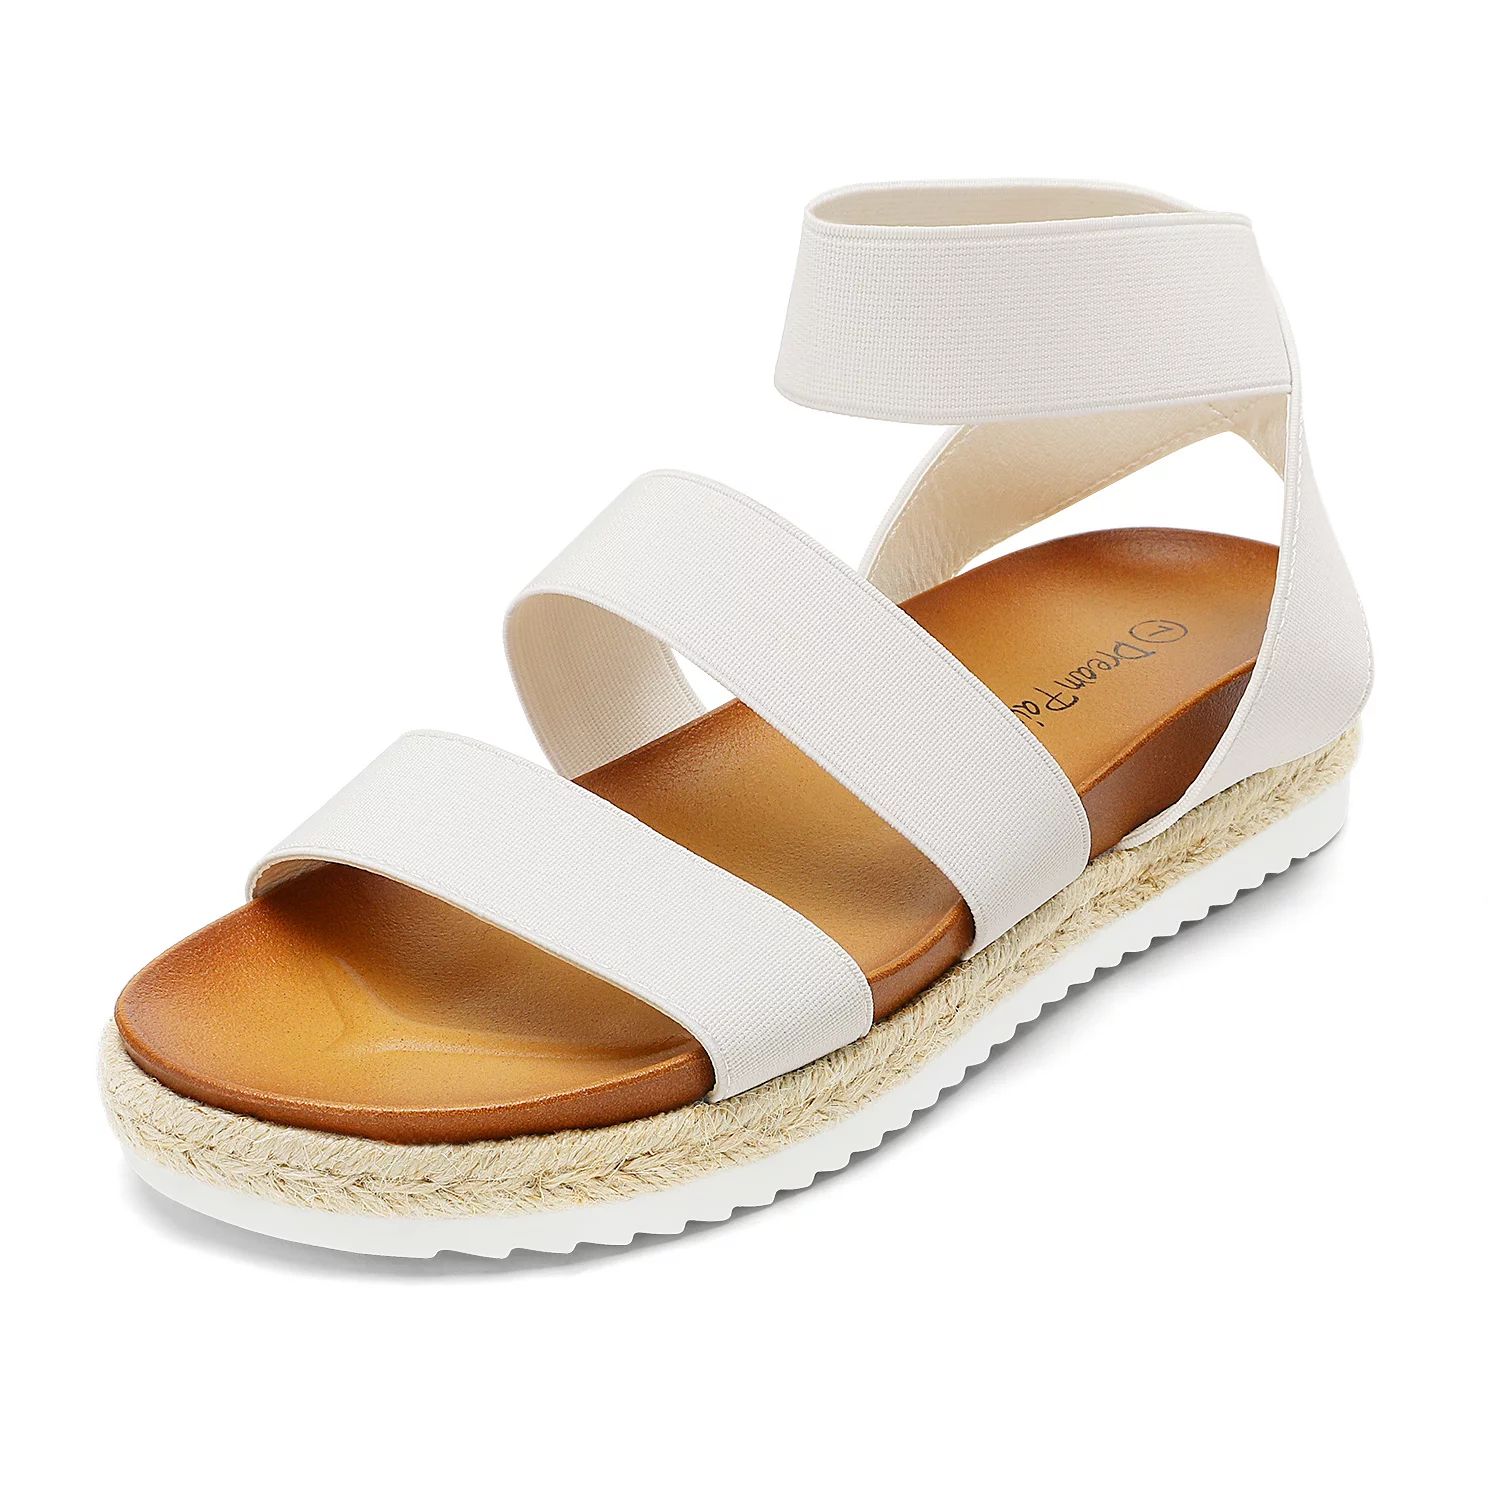 Dream Pairs Women's Platform Wedge Sandals JIMMIE WHITE Size 6.5 | Walmart (US)